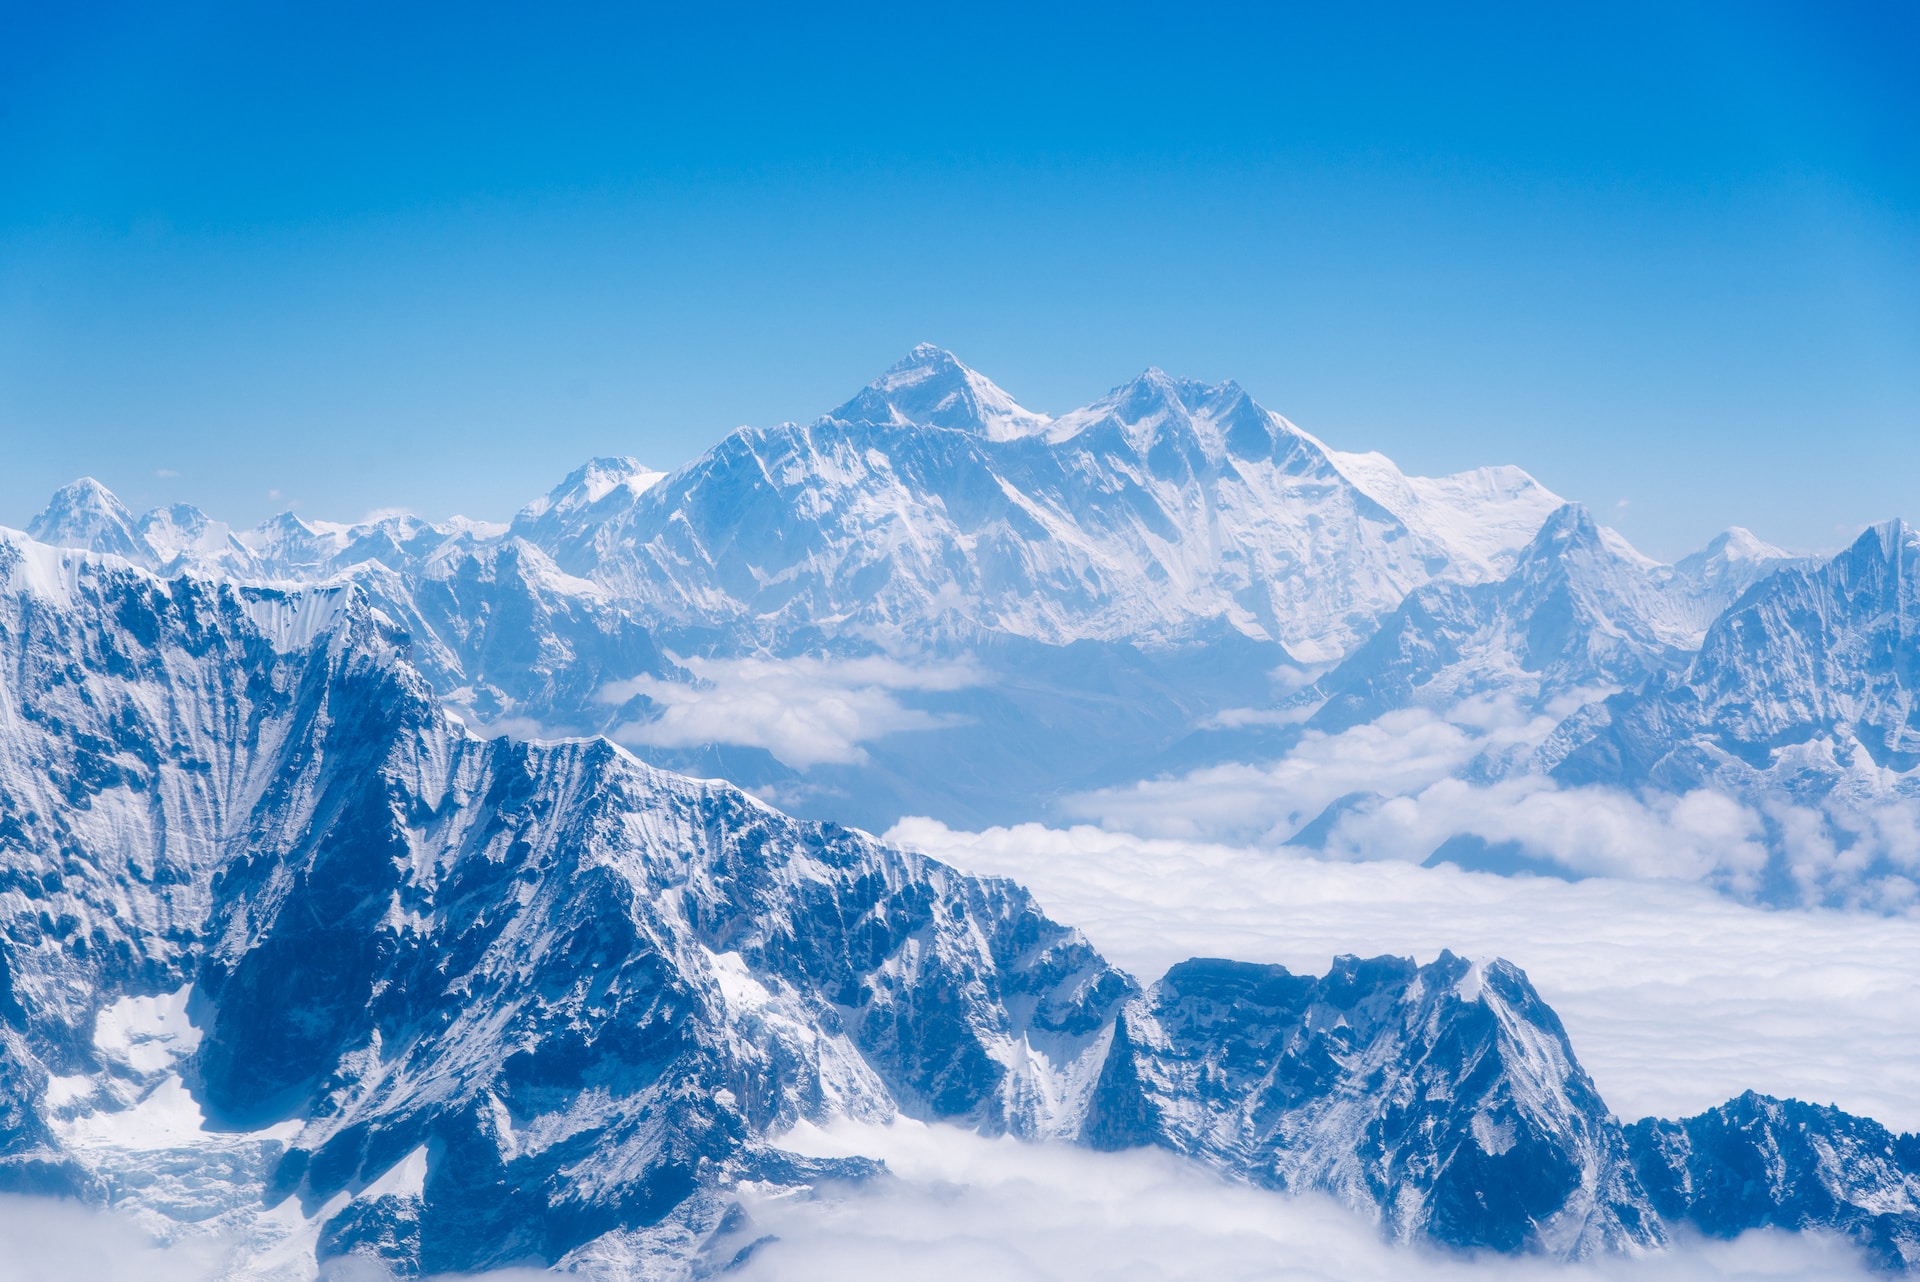 Mount Everest | Quelle: [Unsplash | Andreas Gäbler](https://unsplash.com/de/fotos/XEW_Wd4240c)